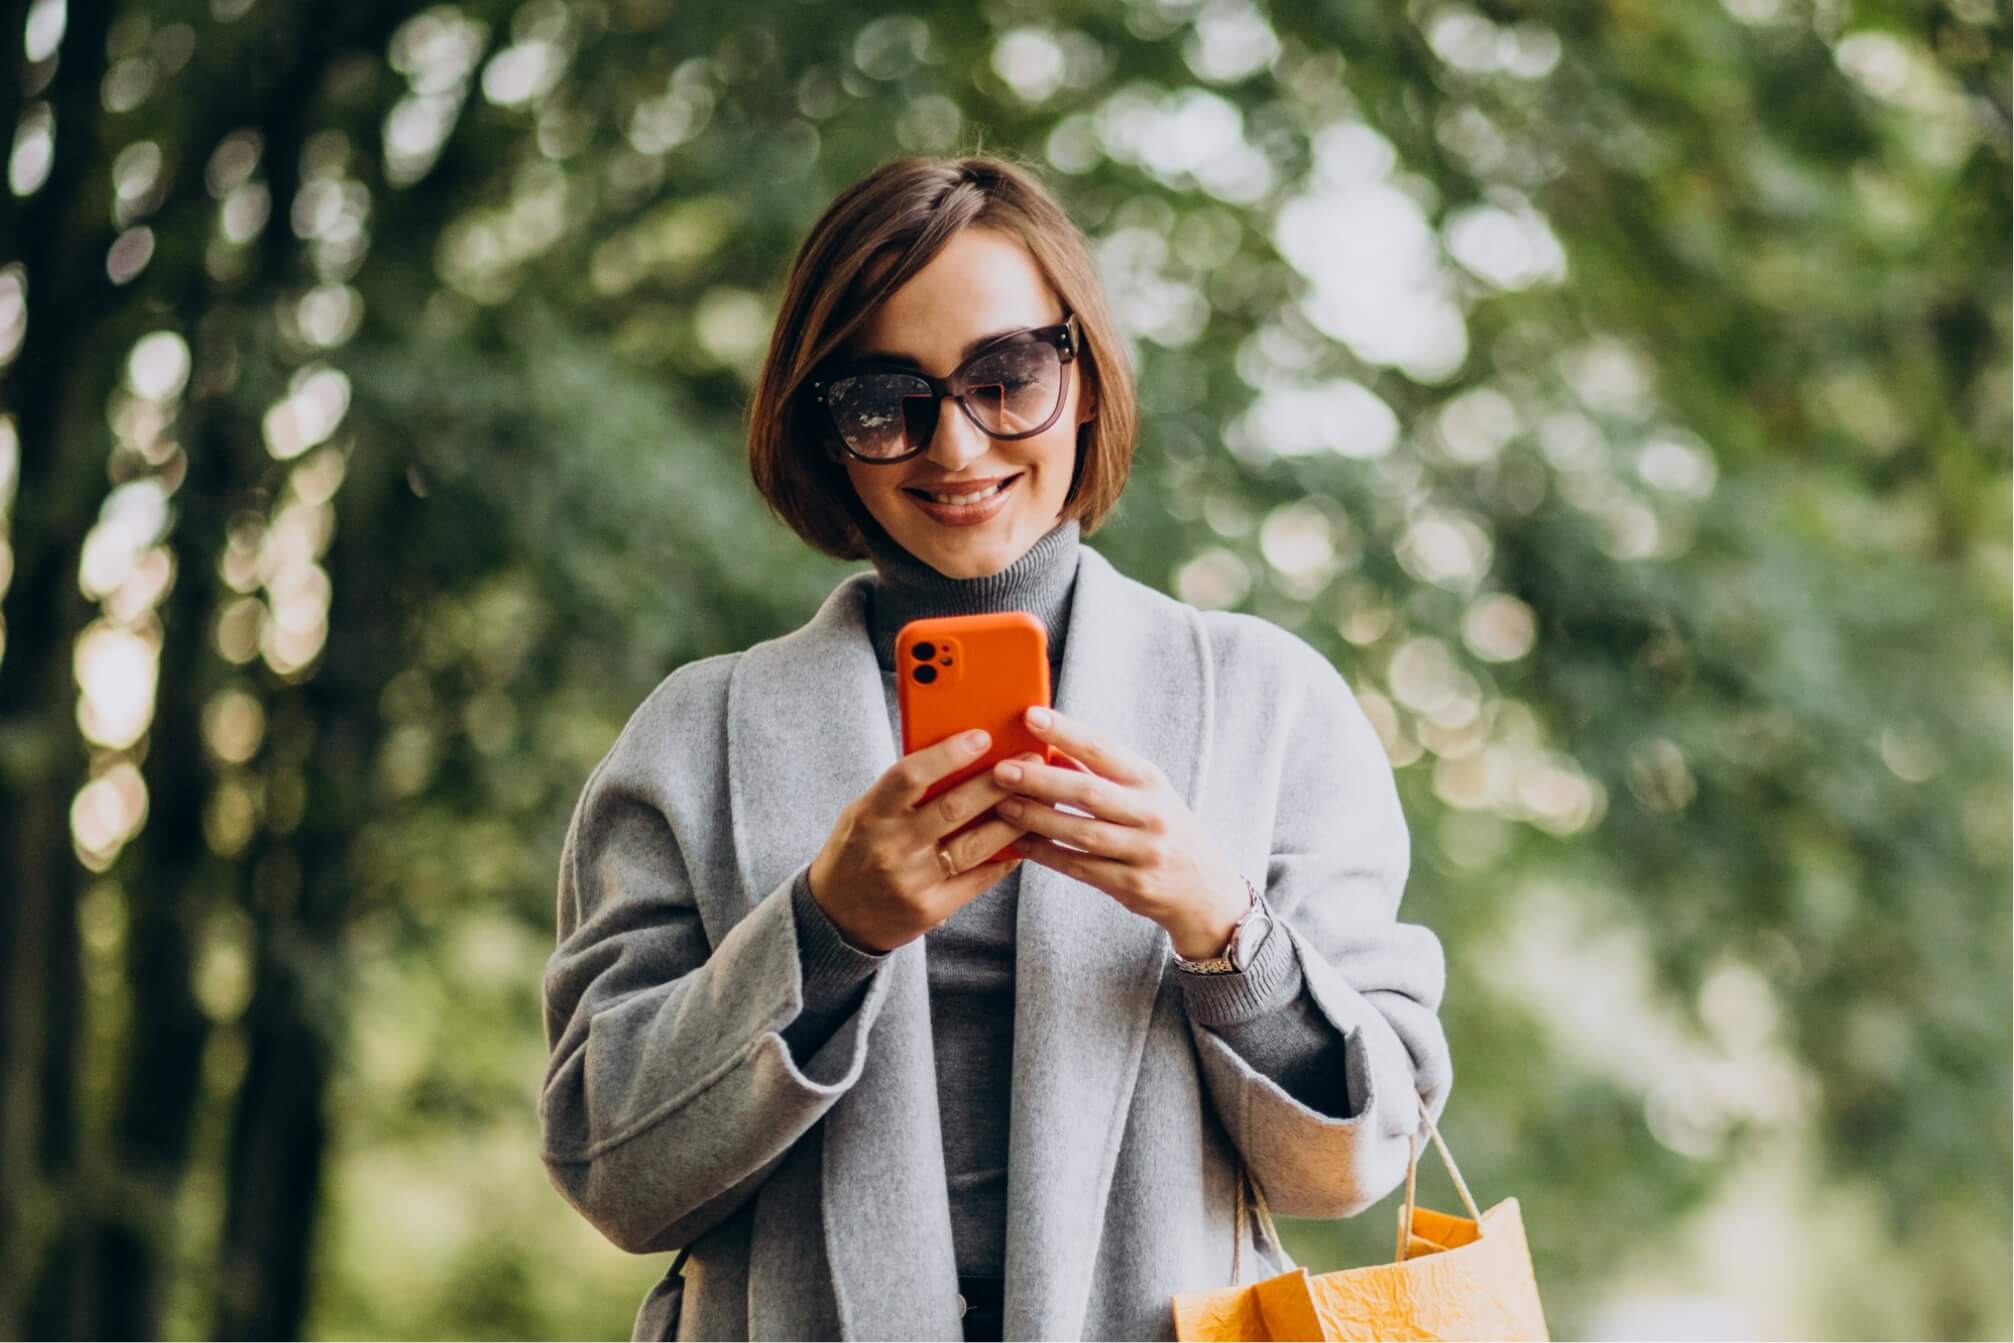 Młoda, uśmiechnięta kobieta w parku spogląda na wyświetlacz pomarańczowego smartfona.